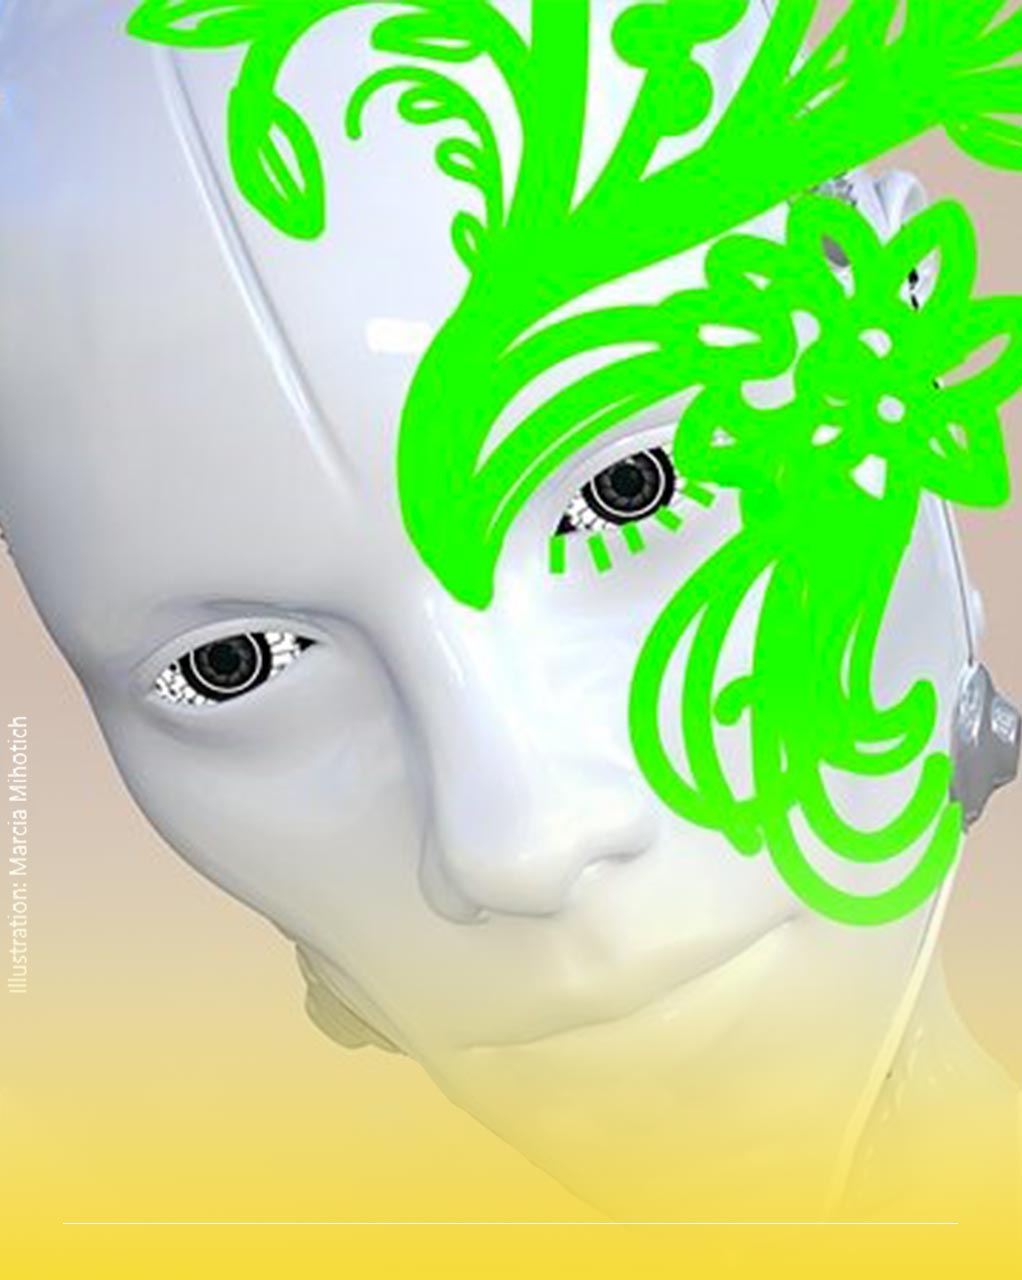 Immagine di un volto robotico